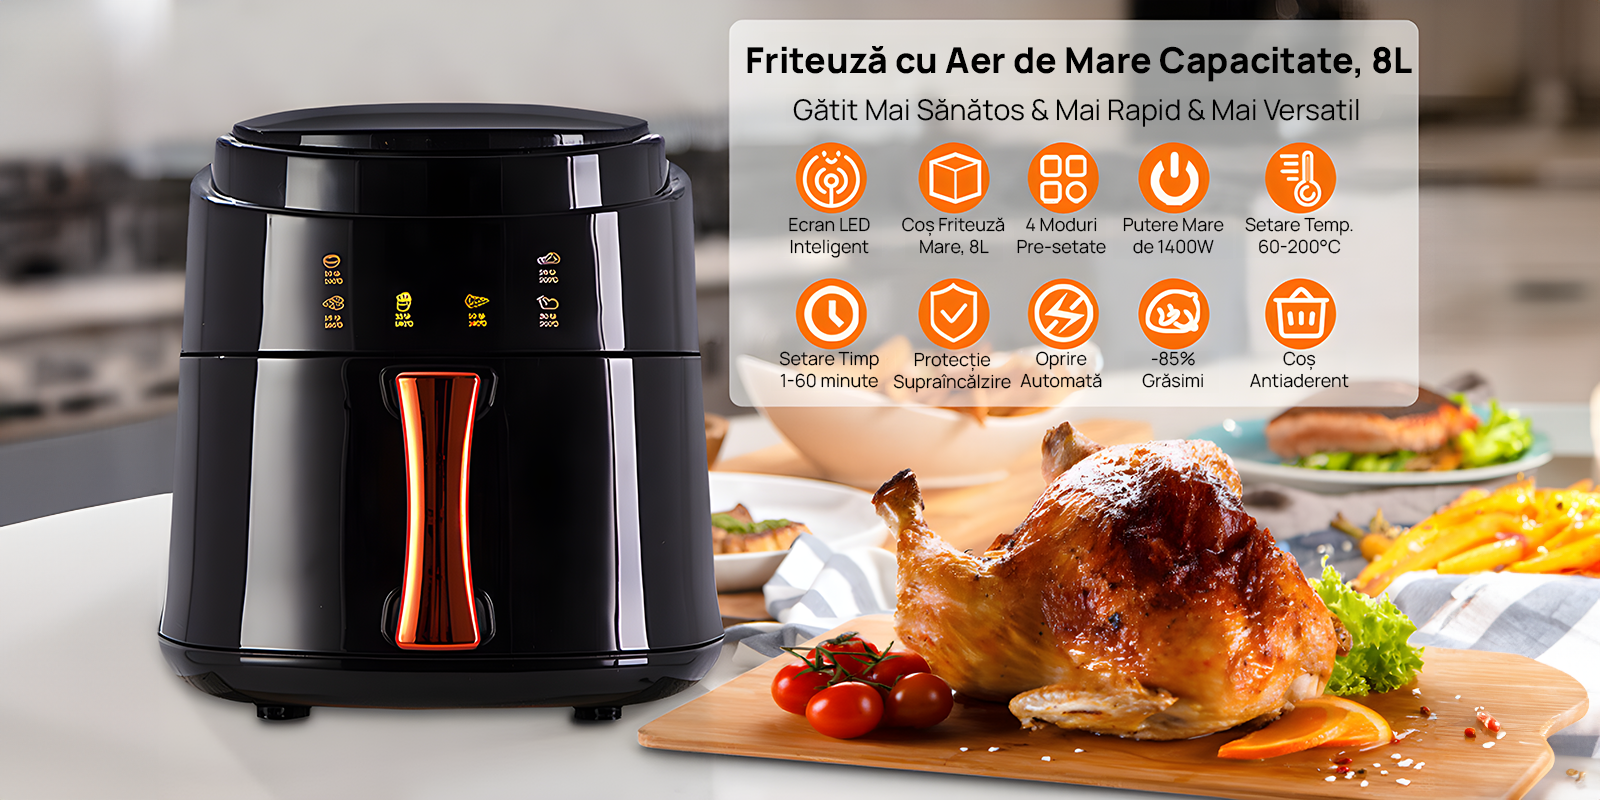 Friteuza cu Aer Cald XL Air Fryer, 1400W - Capacitate 8L, Control Touch Screen